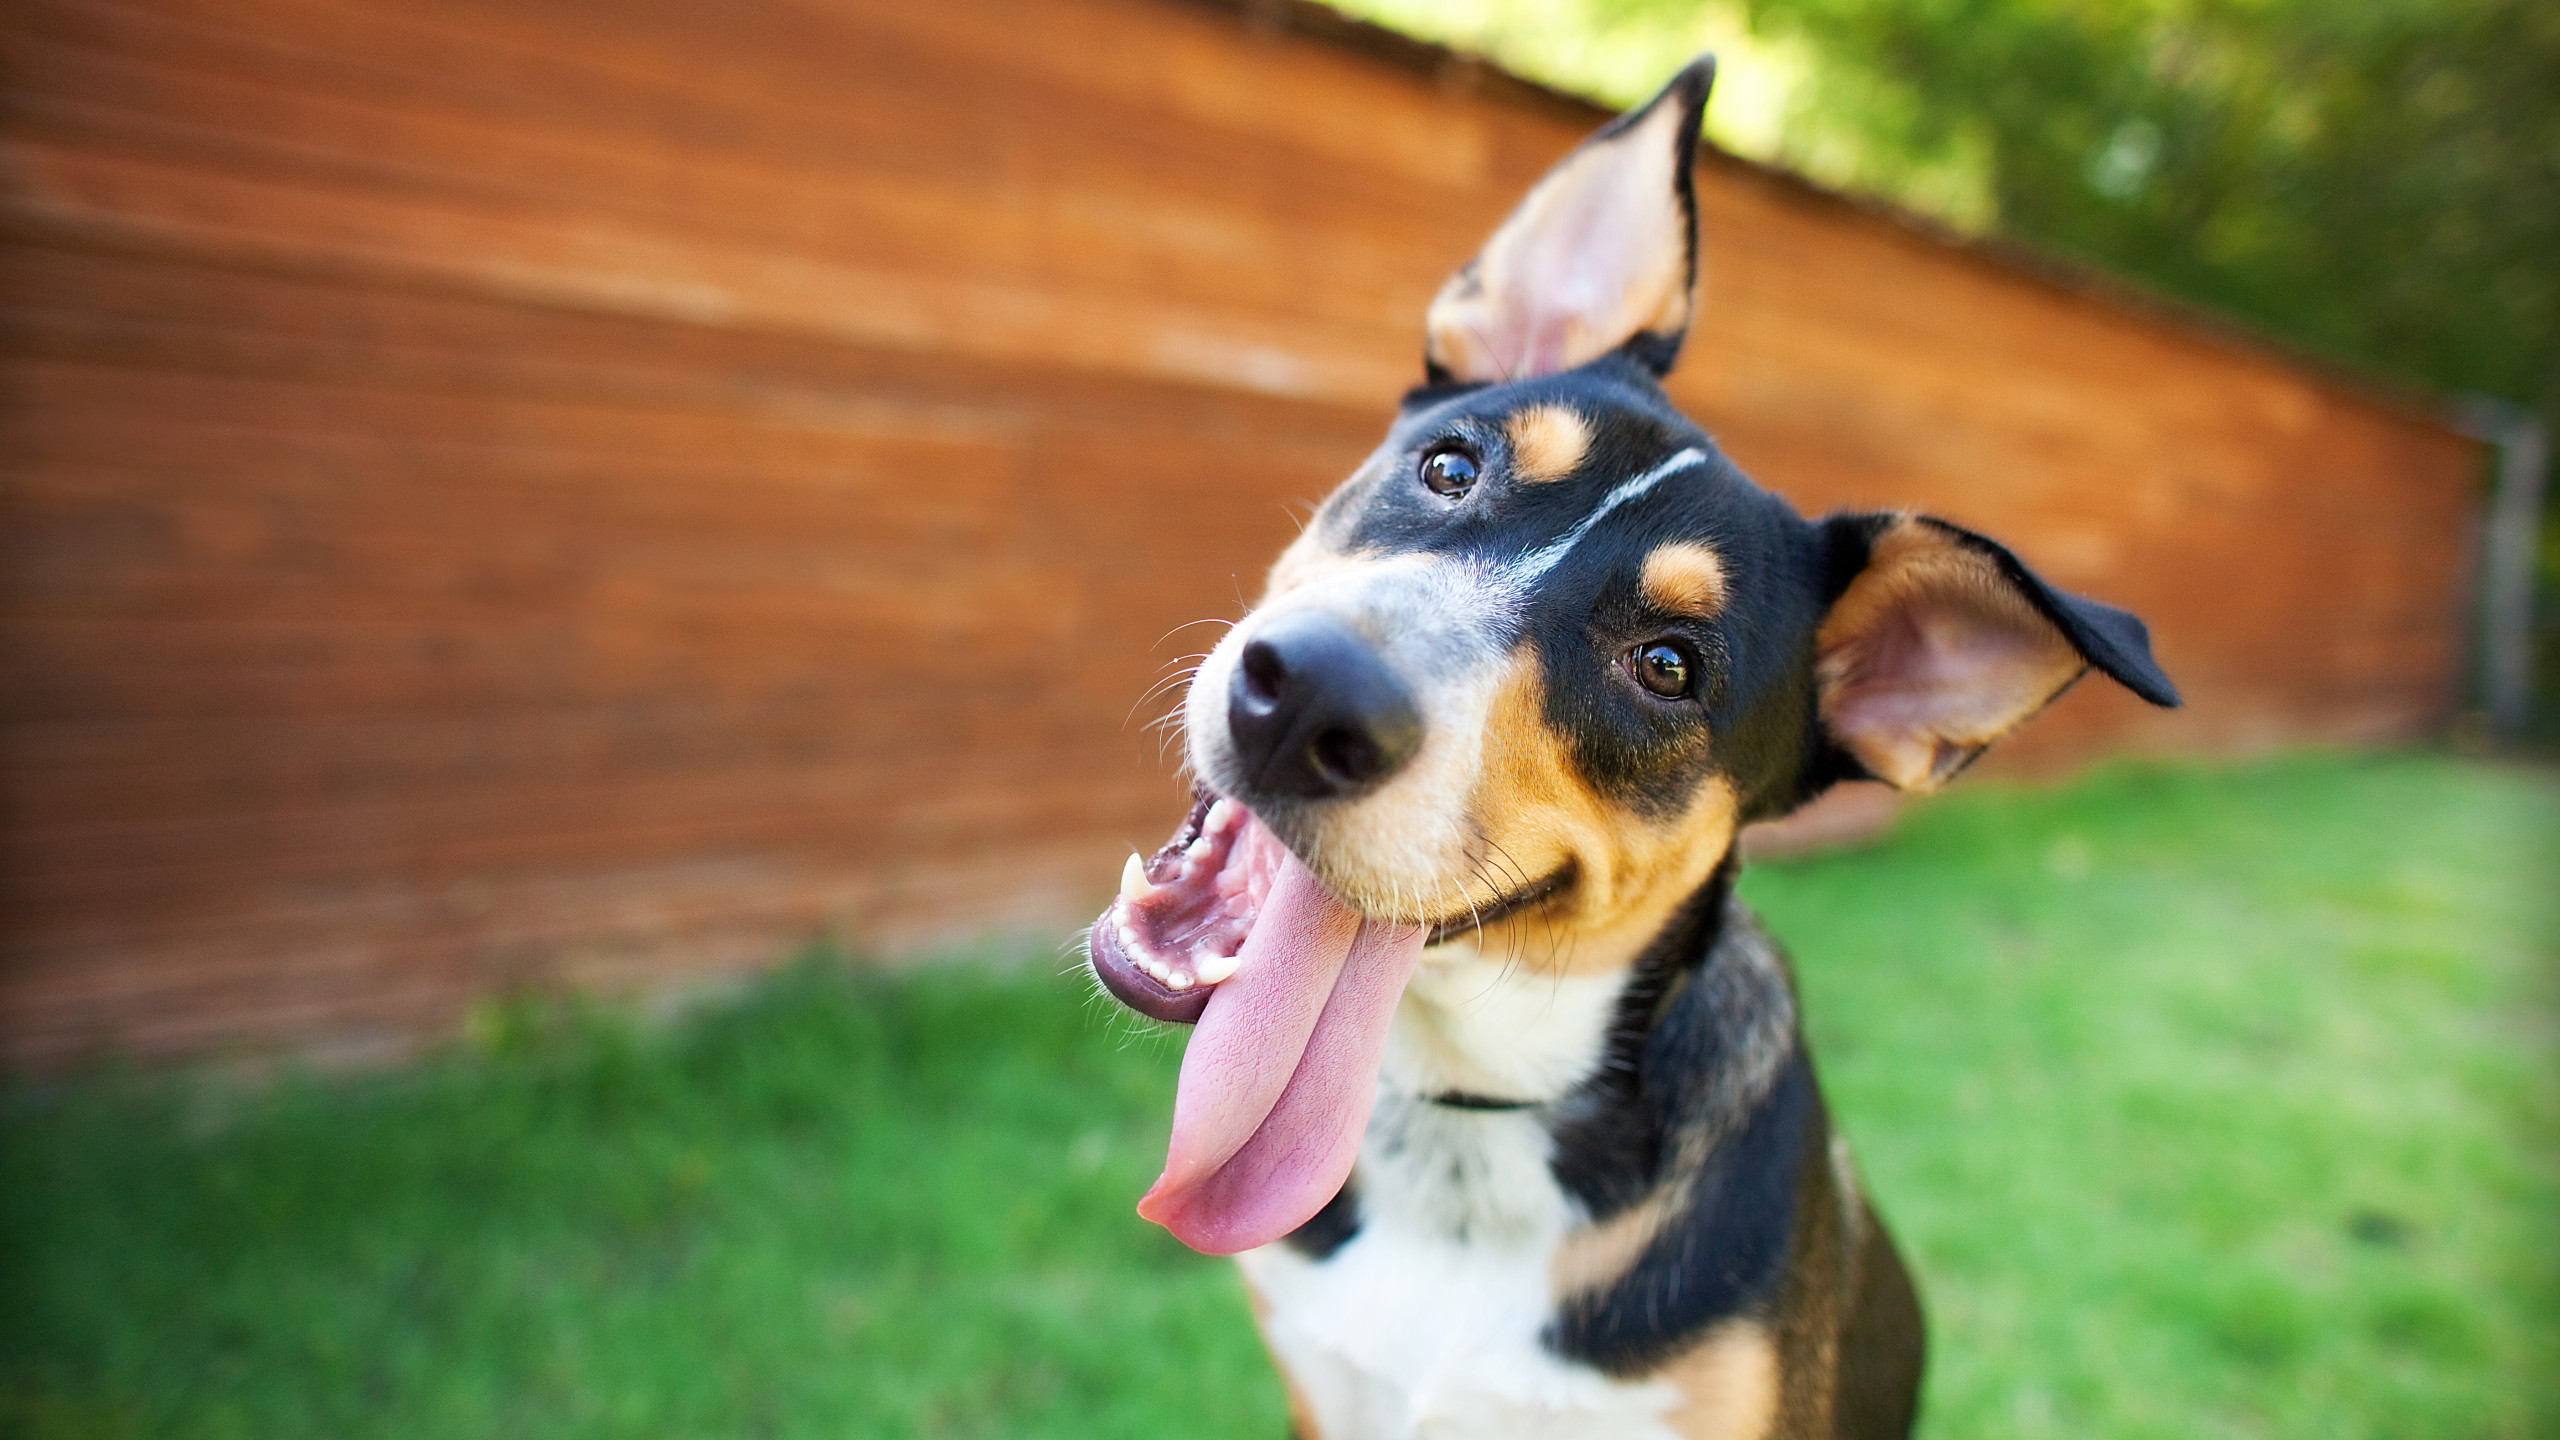 Spca Florida Rent A Dog Program Expands Wfla